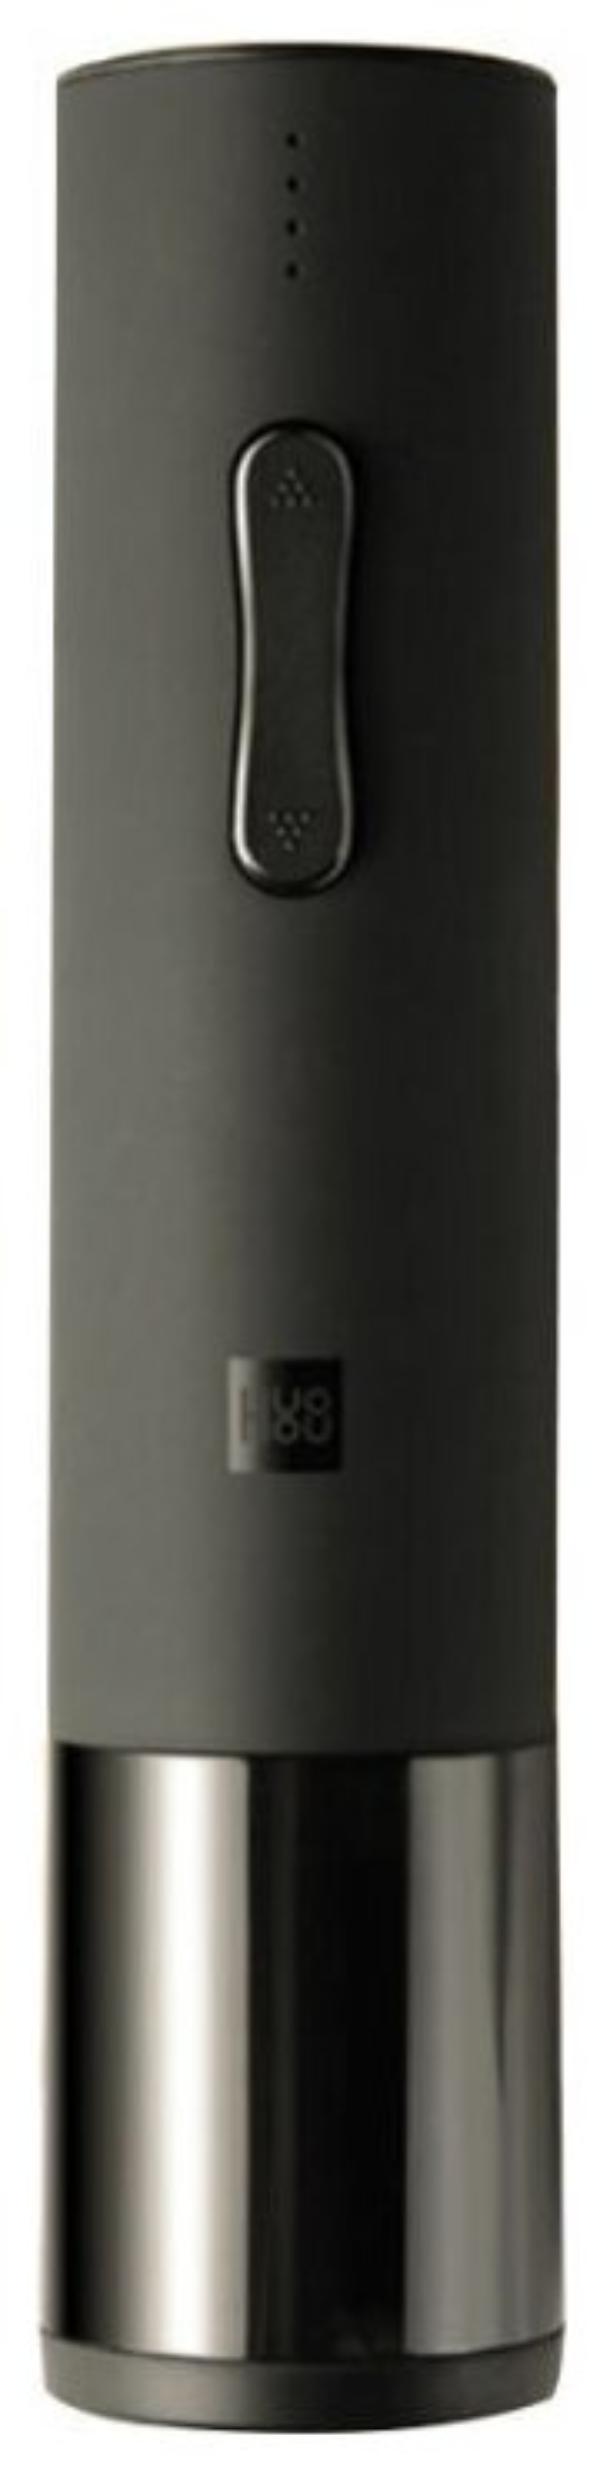 Электрический штопор Xiaomi HuoHou Electric Wine Bottle Opener (HU0120) подарочная упаковка, черный